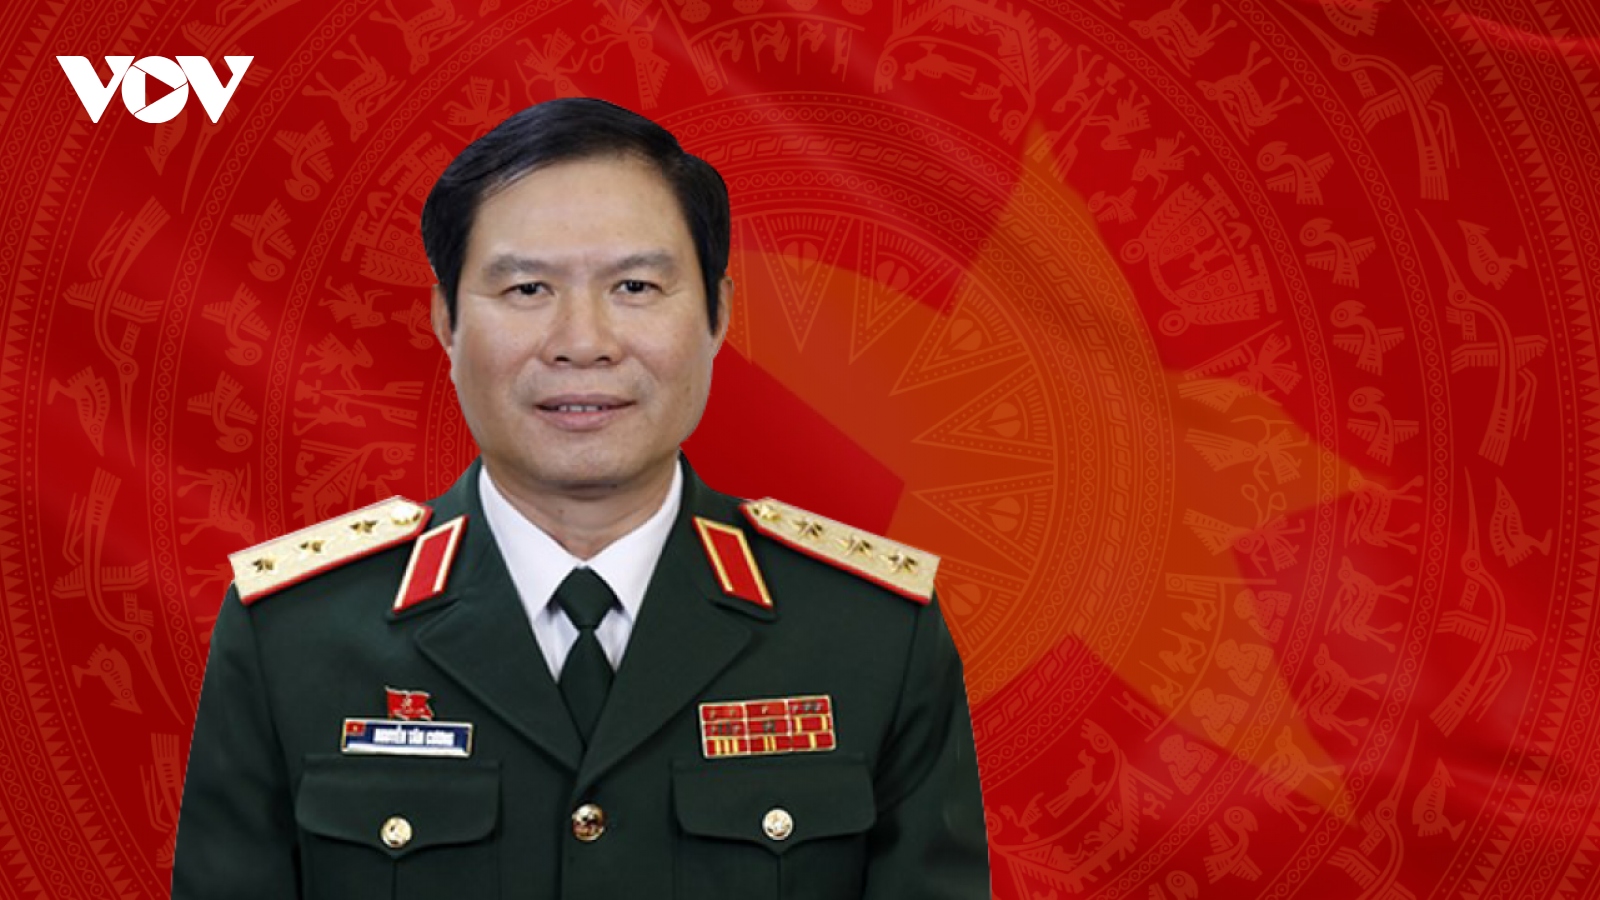 Tiểu sử Tổng Tham mưu trưởng QĐND Việt Nam Nguyễn Tân Cương